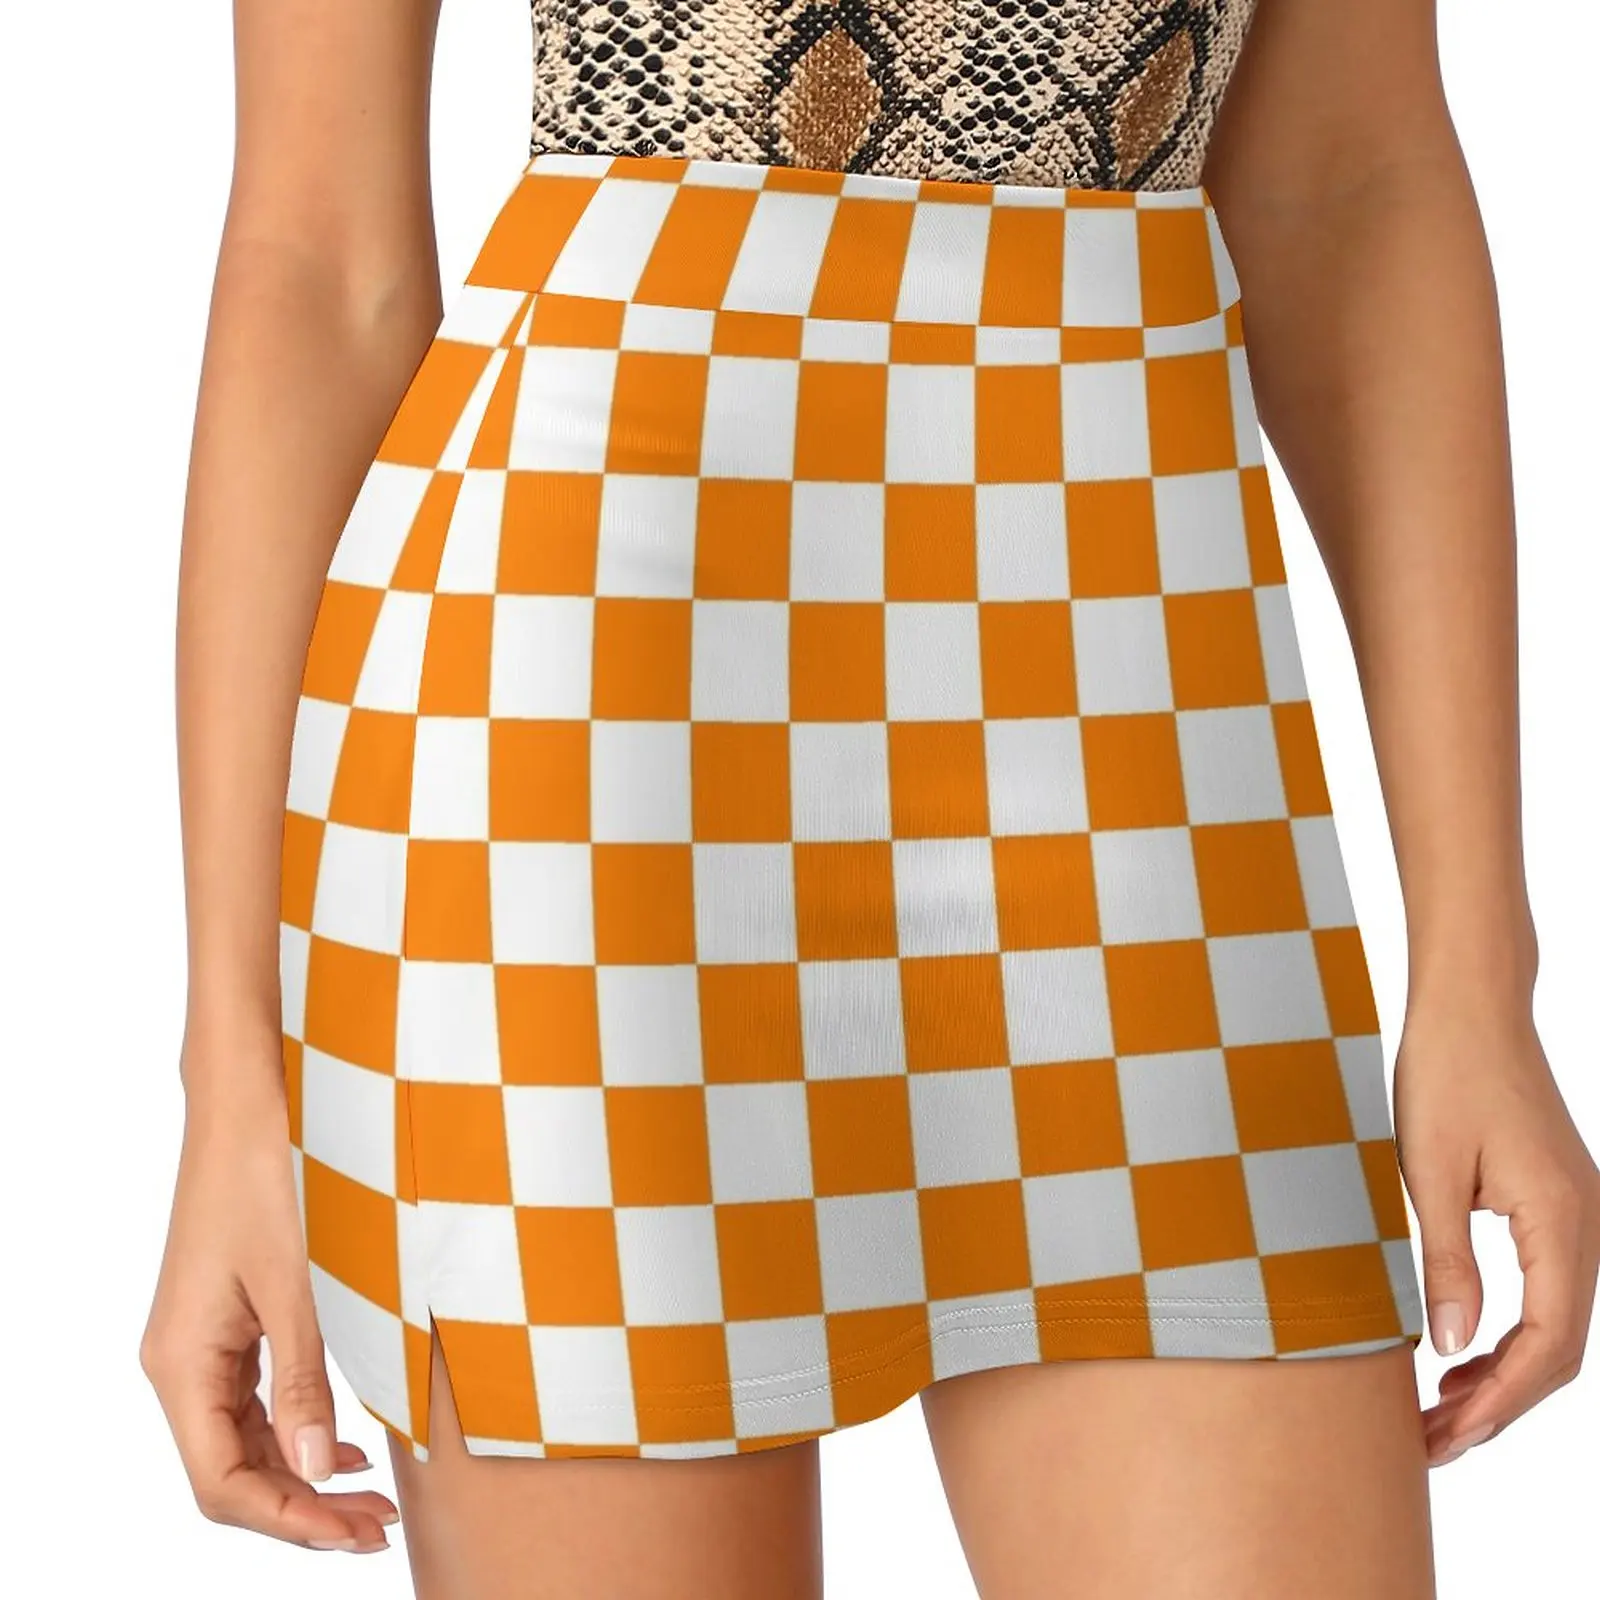 

Оранжево-белая юбка в шахматную клетку, юбка-брюки, сексуальные короткие мини-юбки, Женская скромная юбка для женщин